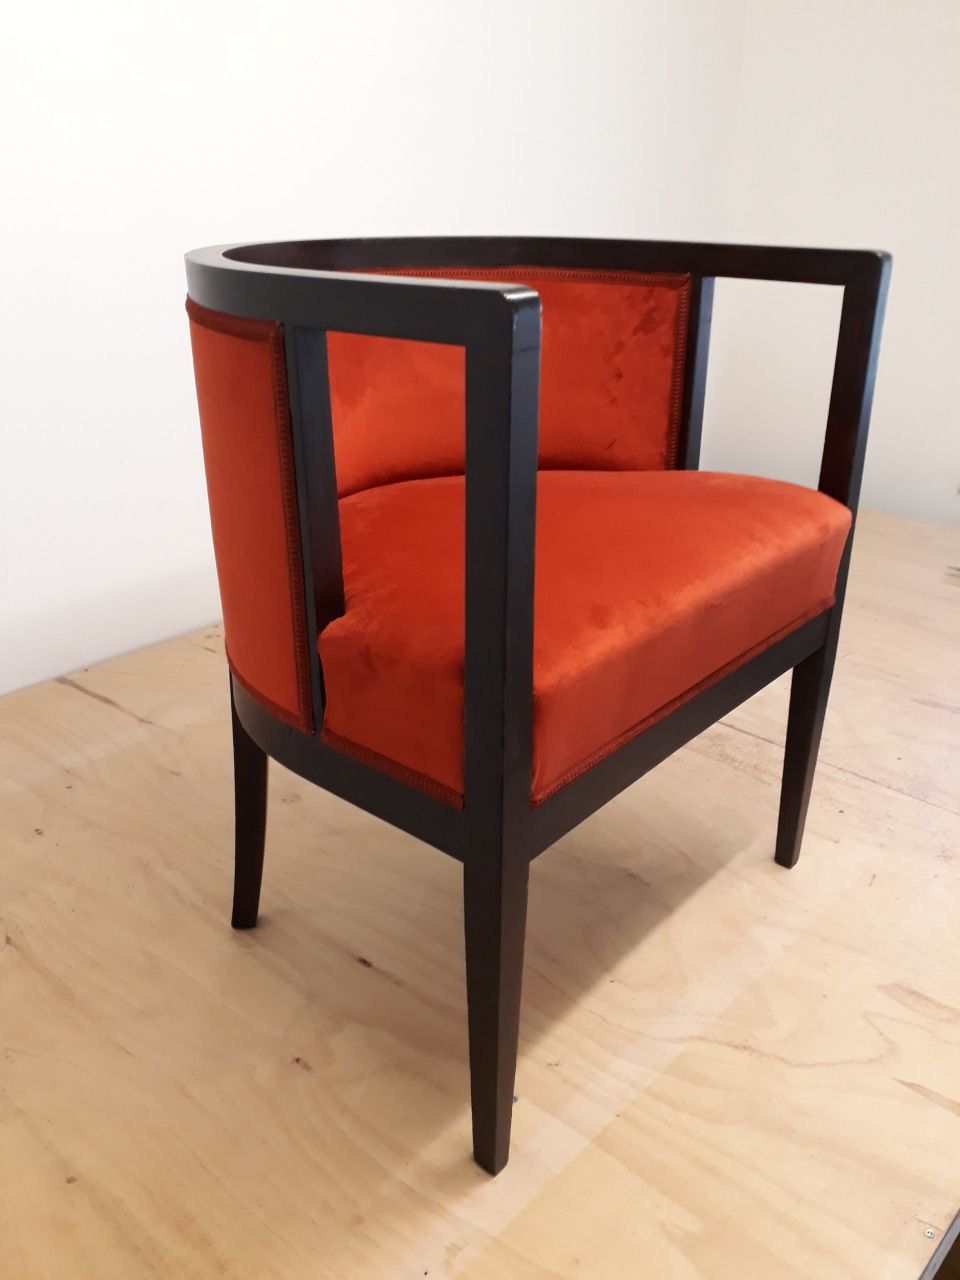 Bild von rotschwarzem Stuhl